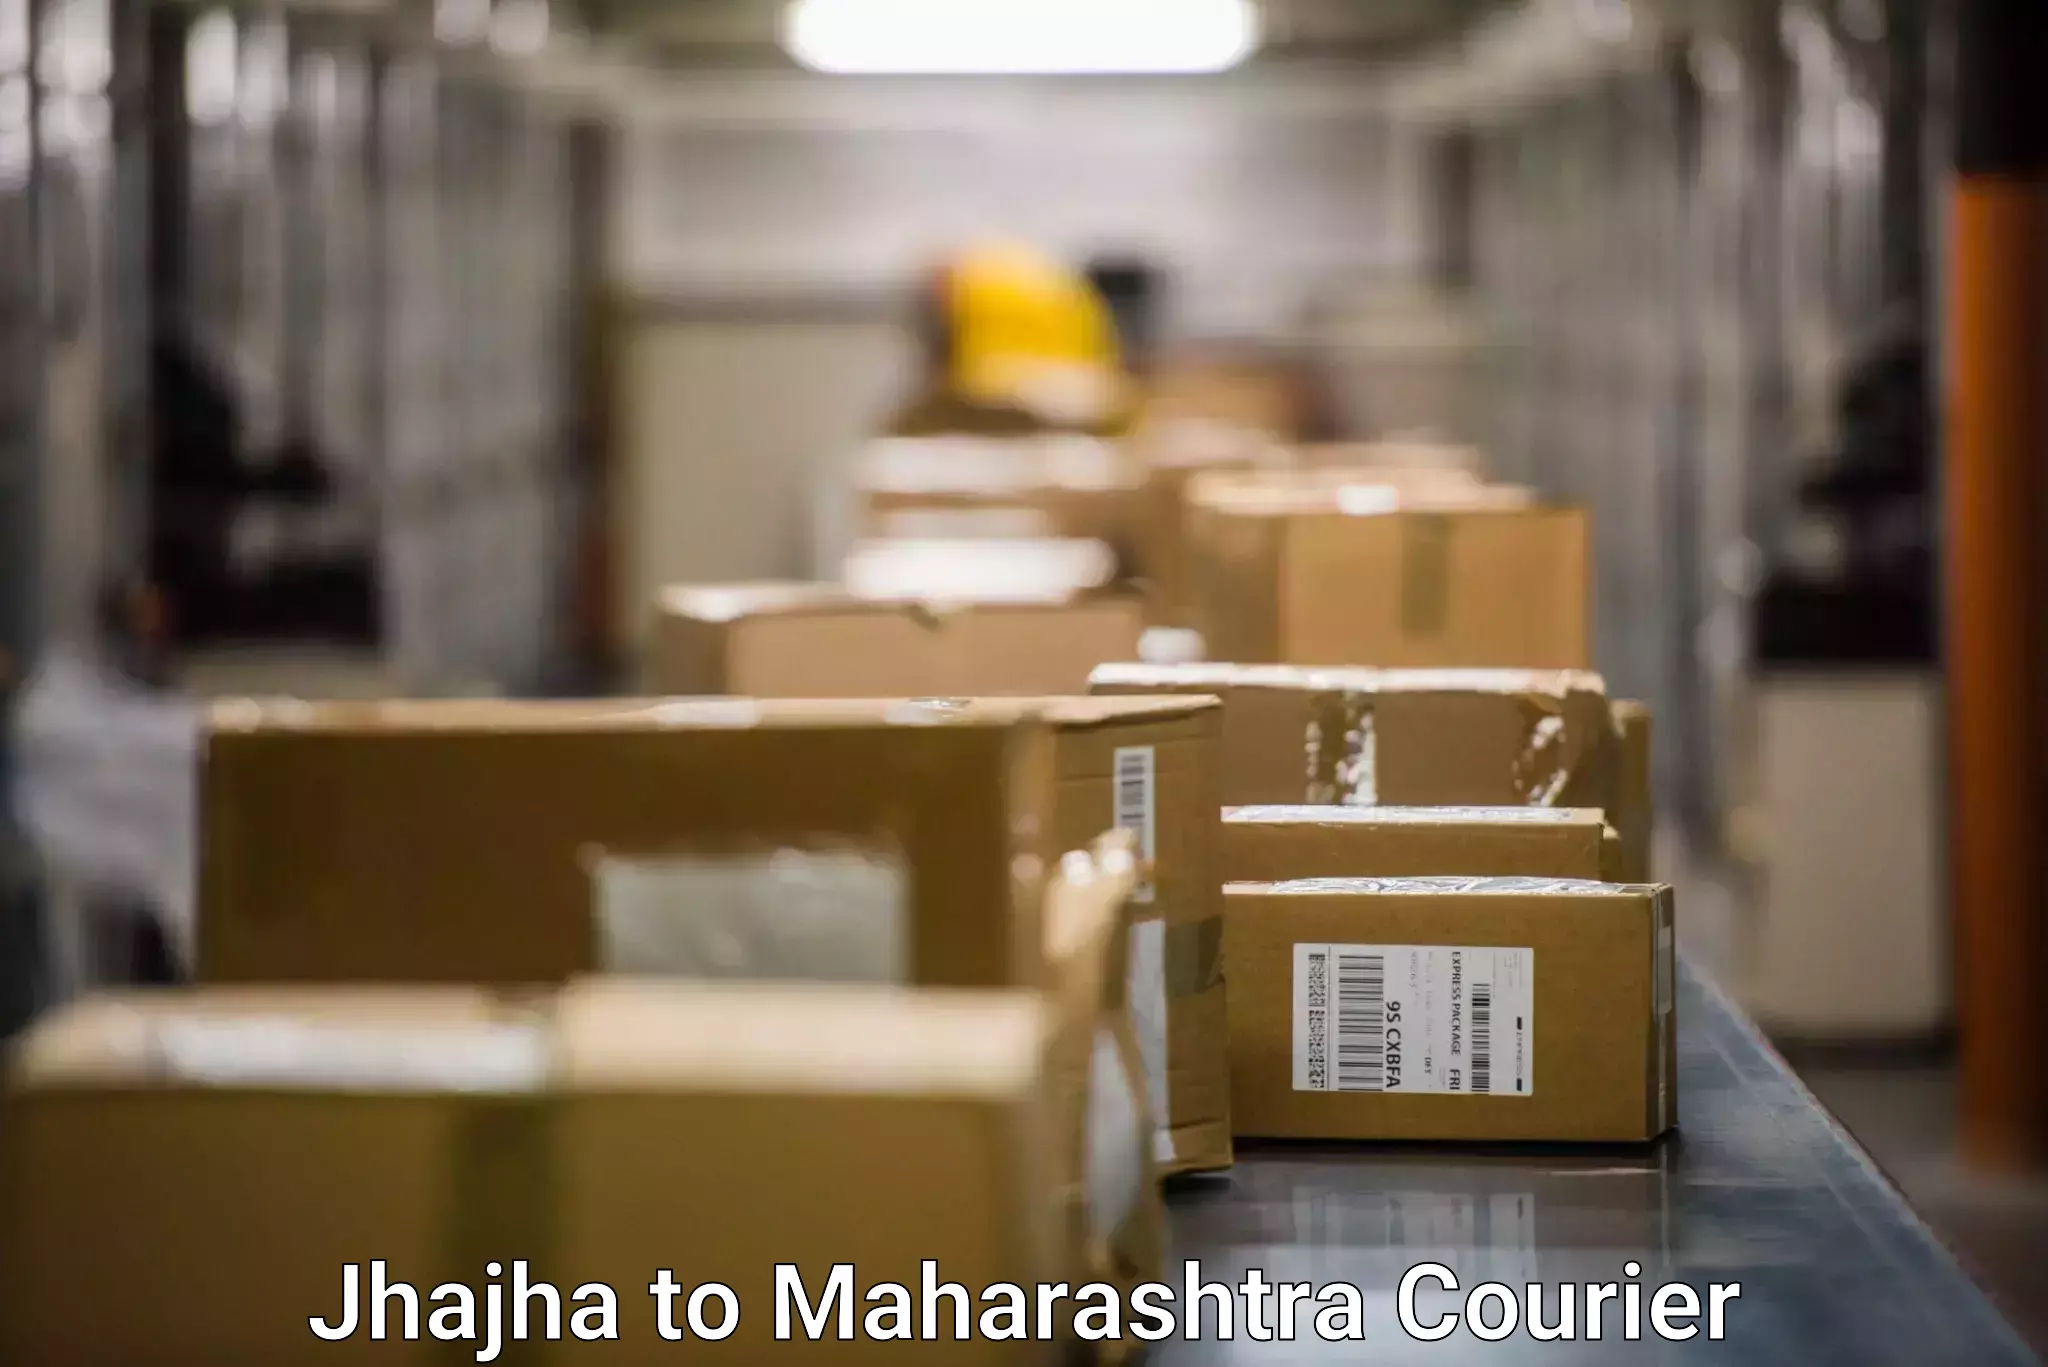 Streamlined shipping process Jhajha to Maharashtra